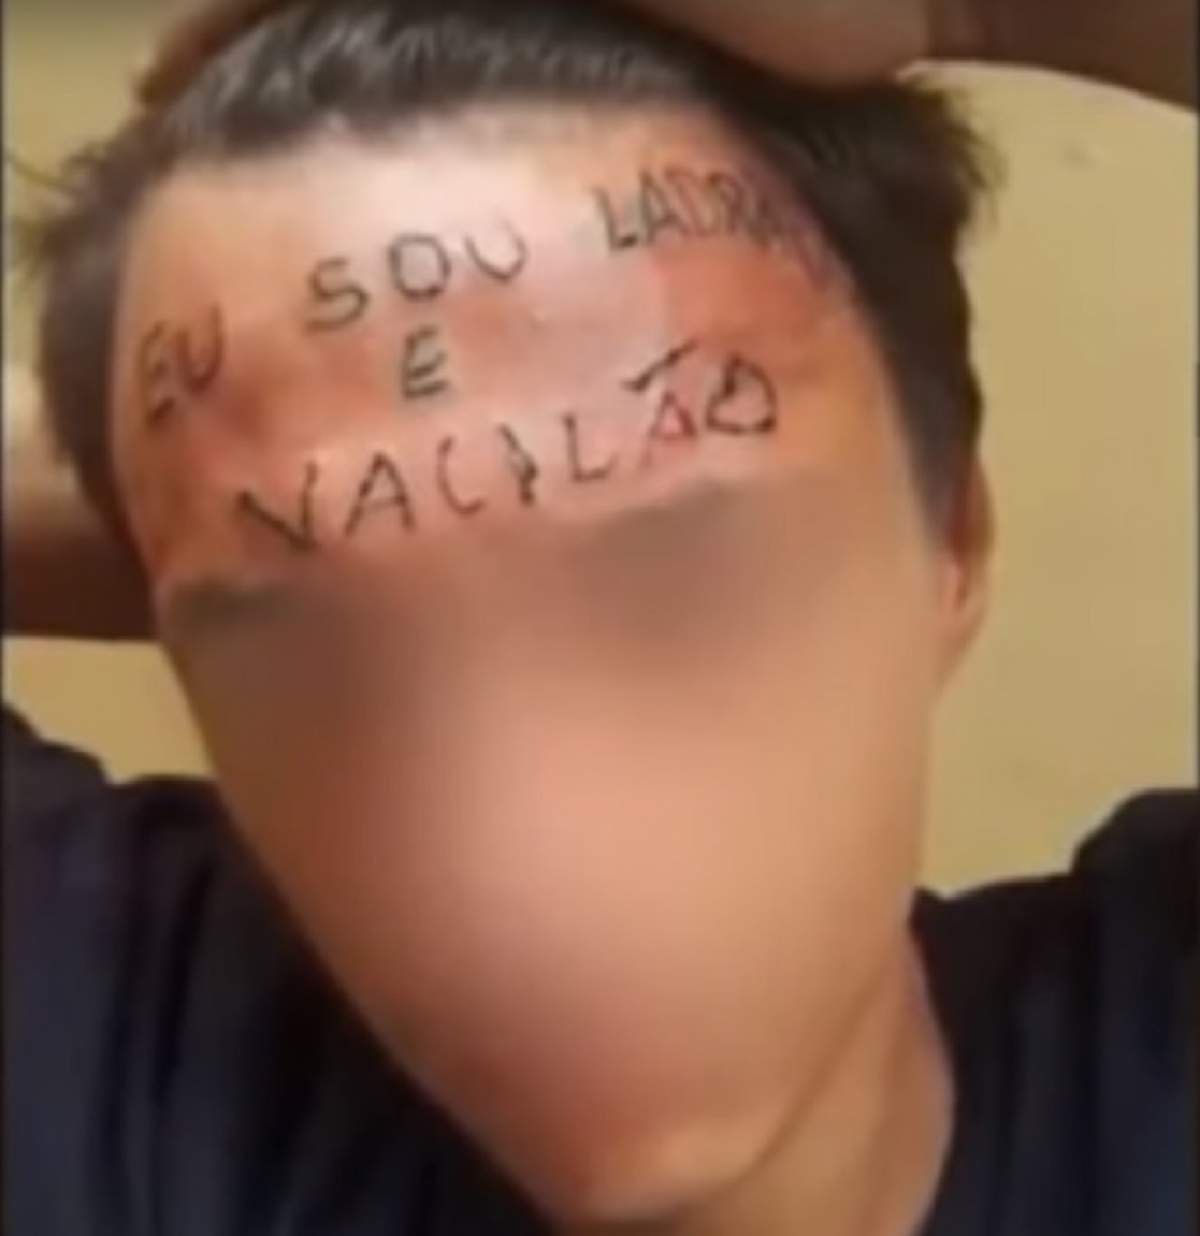 VIDEO / A fost acuzat că a vrut să fure o bicicletă şi i s-a făcut un tatuaj şocant pe frunte! Agresorii au fost prinşi